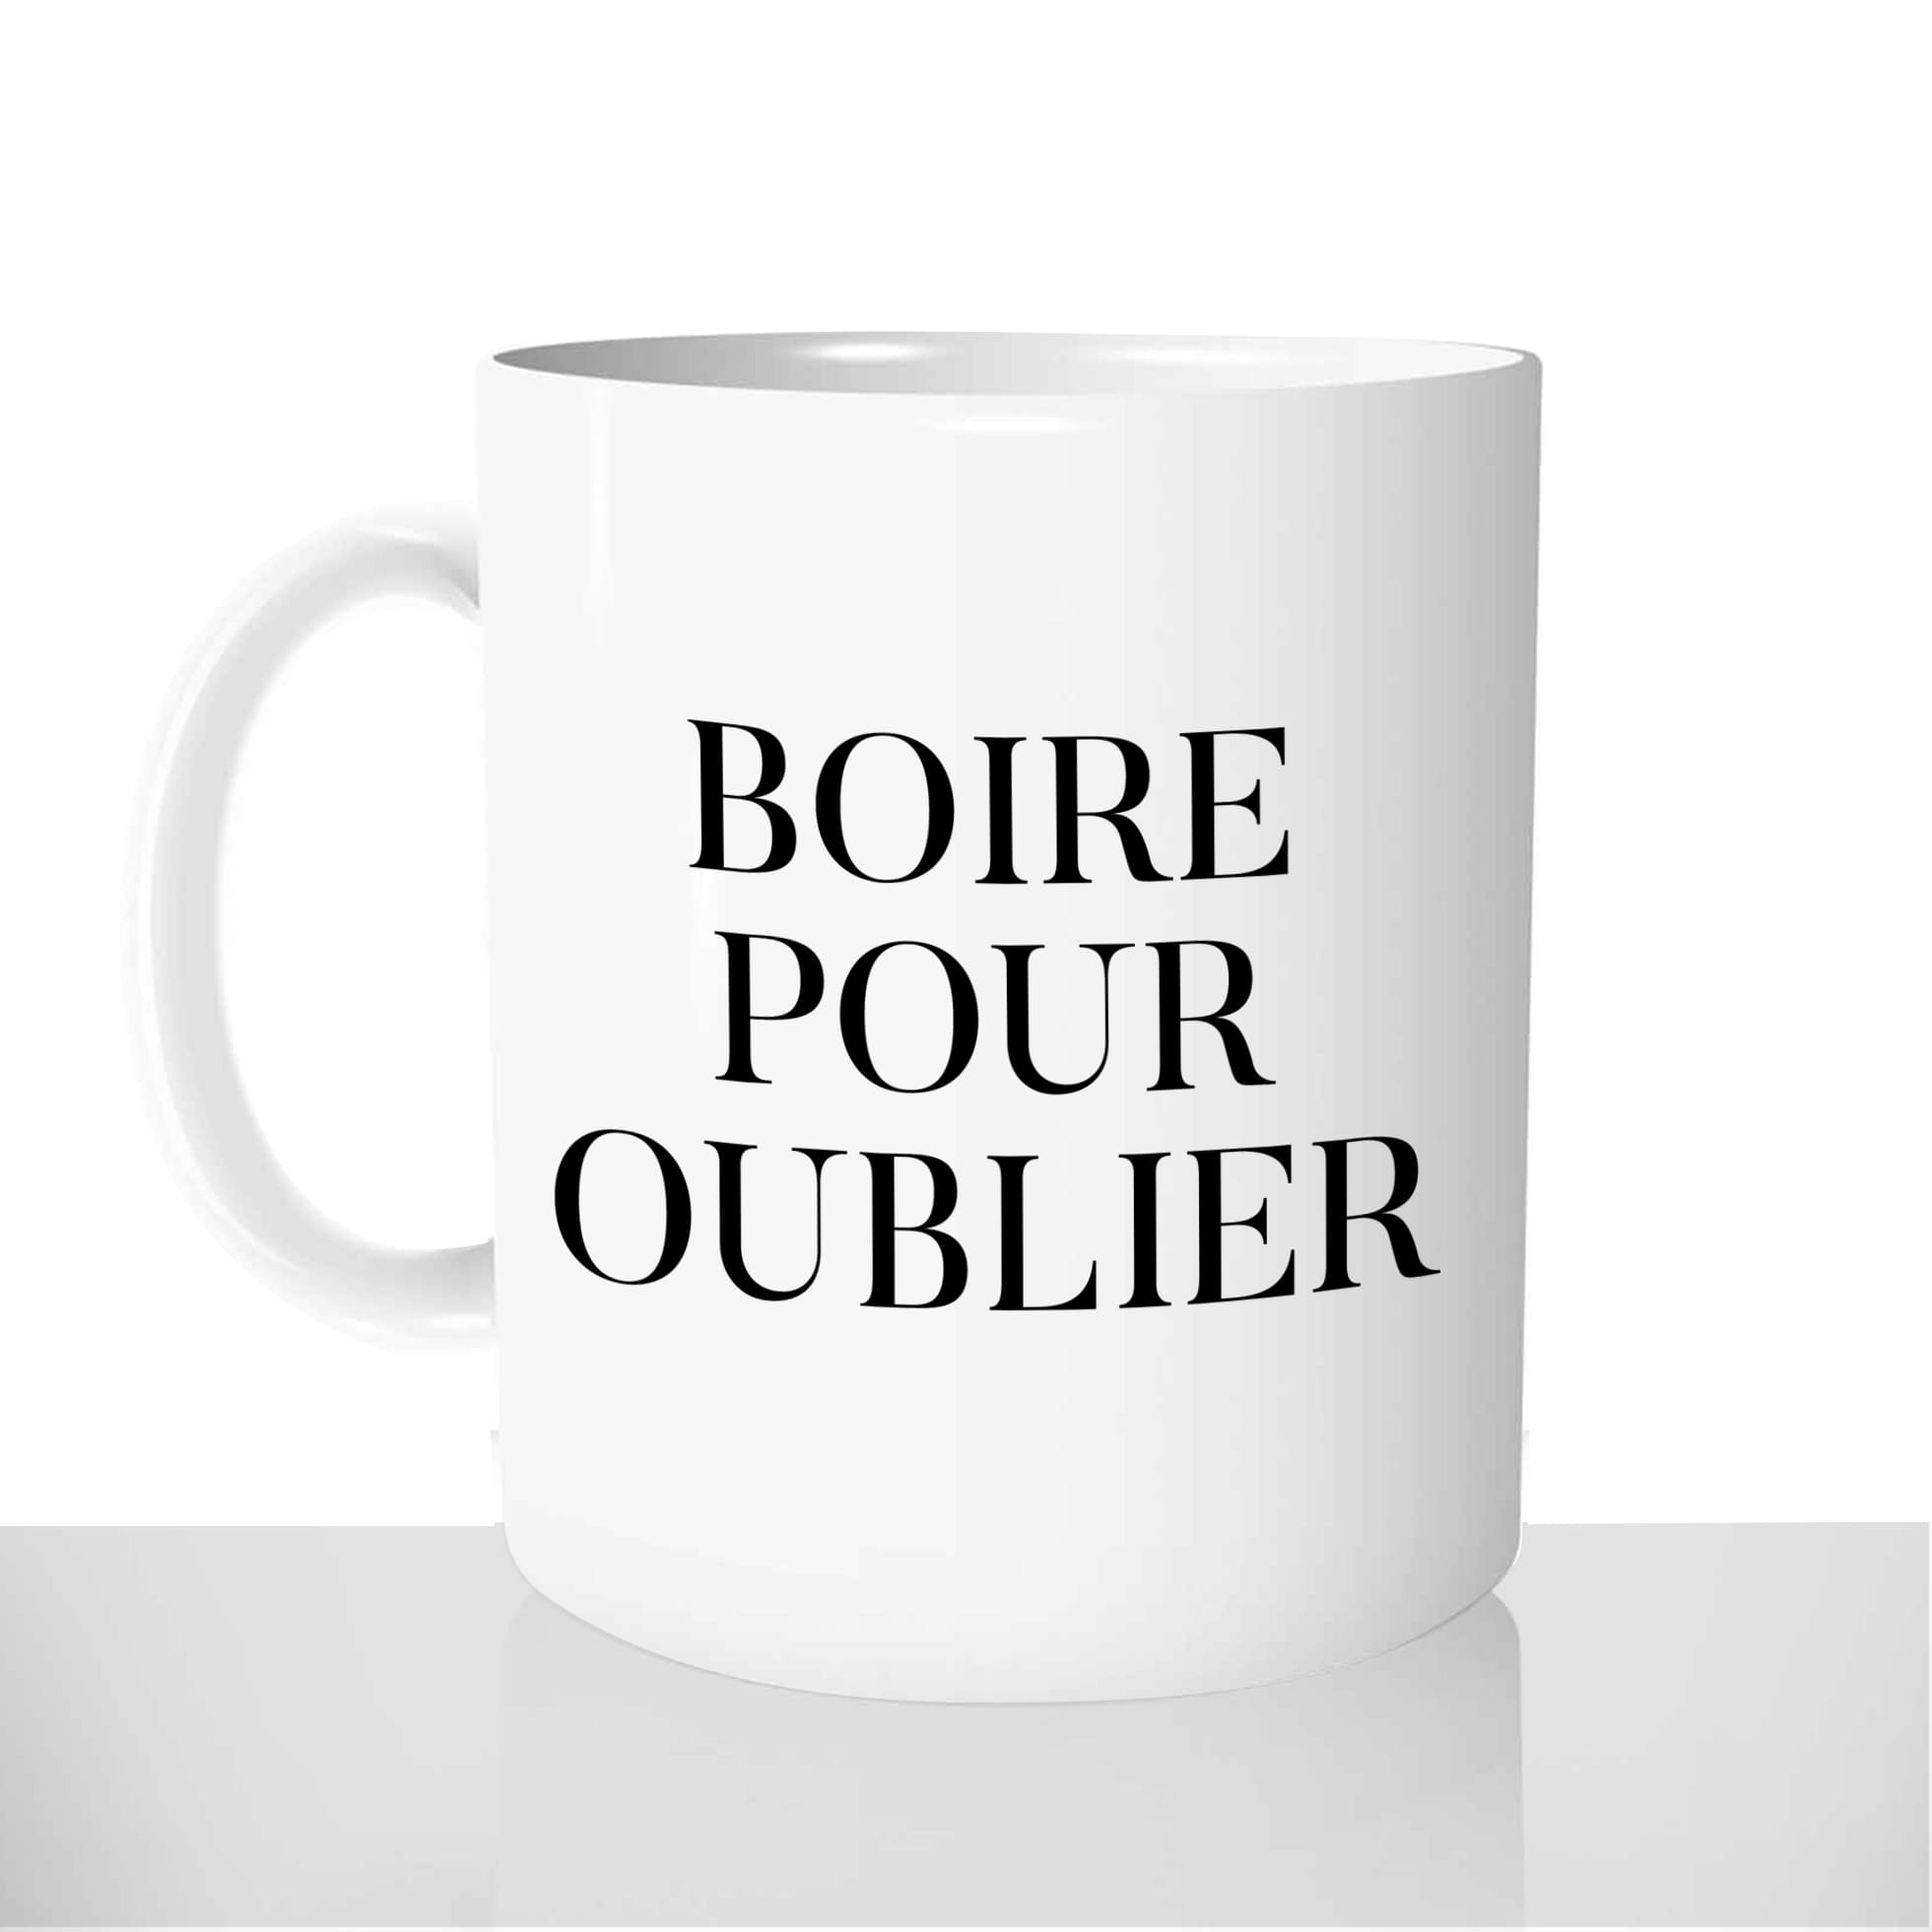 mug-blanc-personnalisable-thermoreactif-tasse-thermique-boire-pour-oublier-café-apéro-vin-citation-drole-fun-idée-cadeau-original